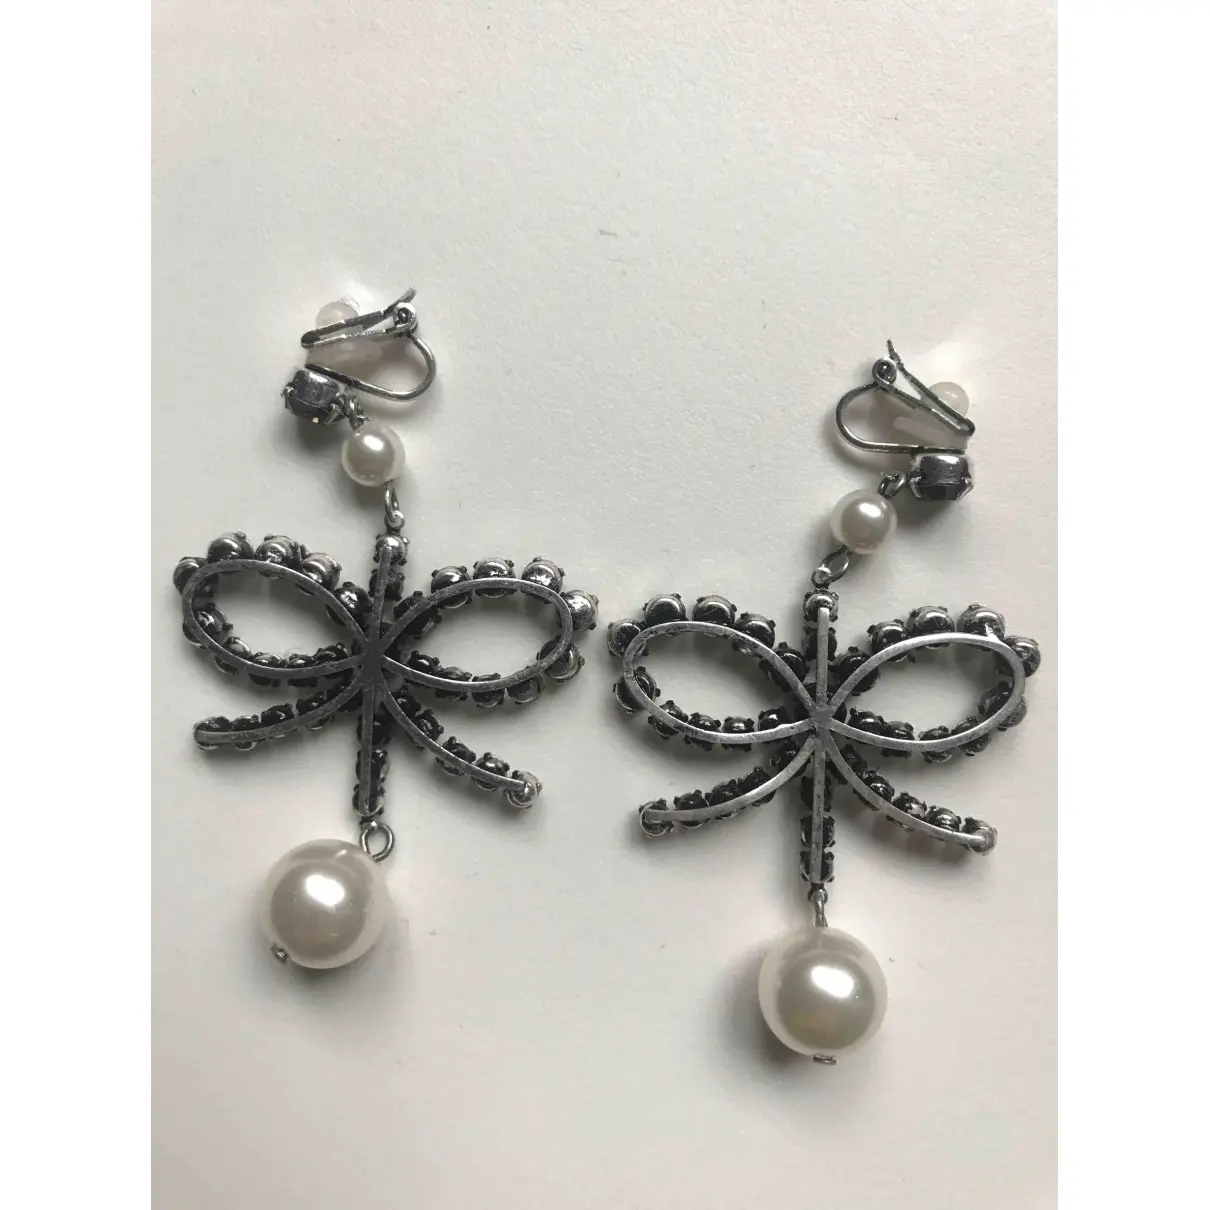 Erdem x H&M Pearls earrings for sale